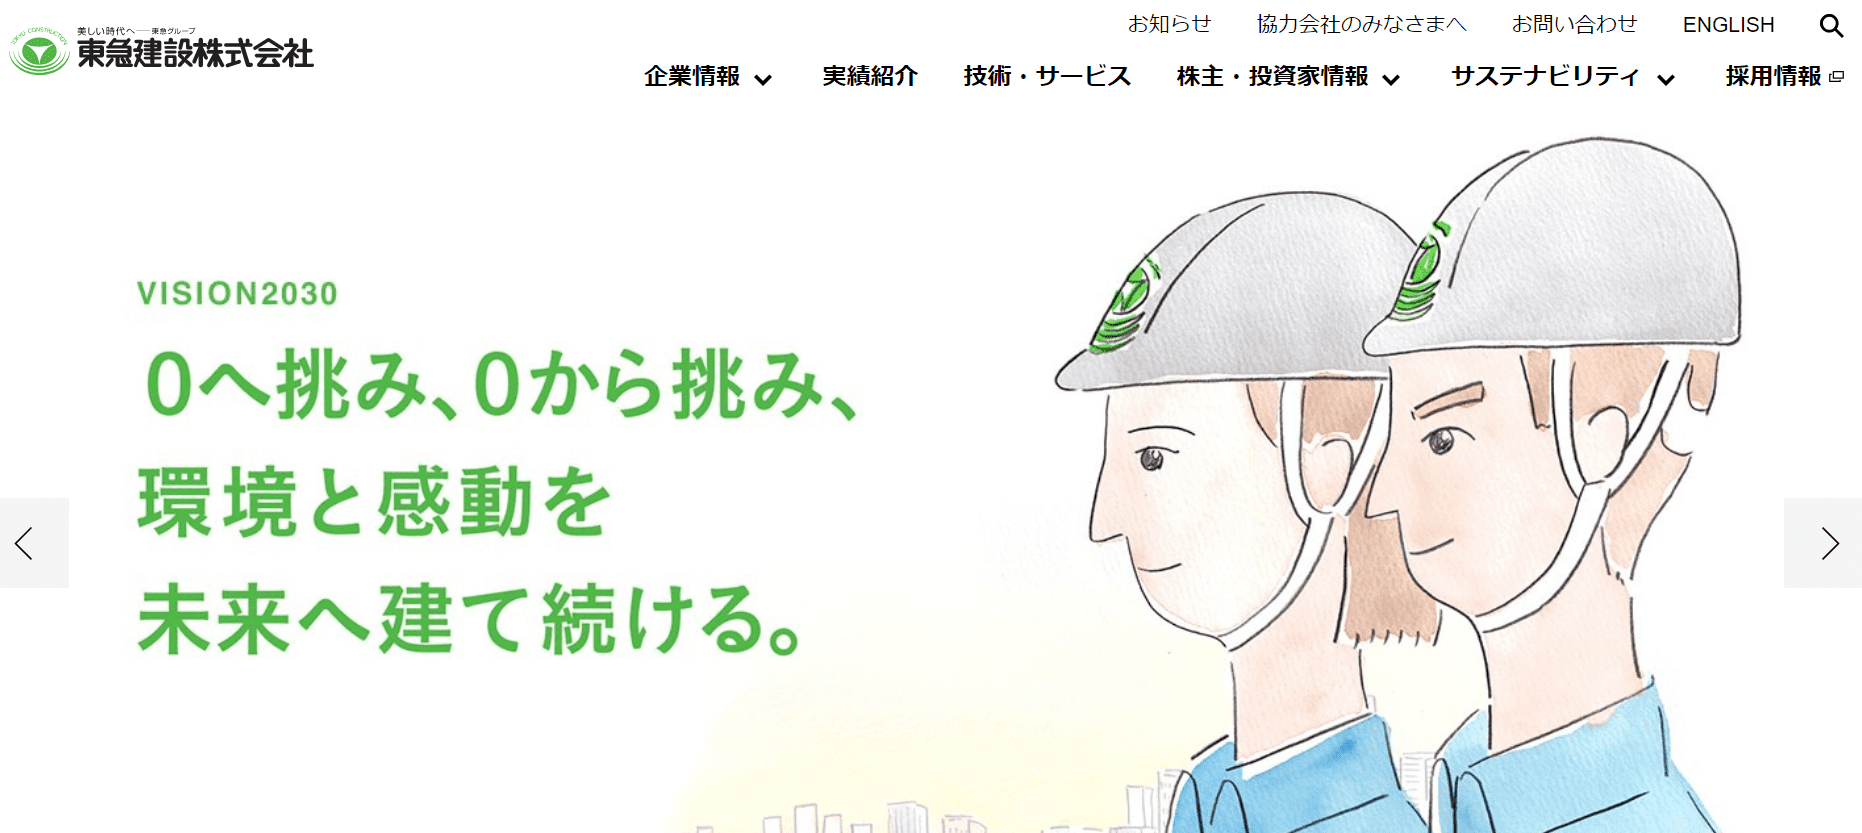 東急建設株式会社のホームページ画像